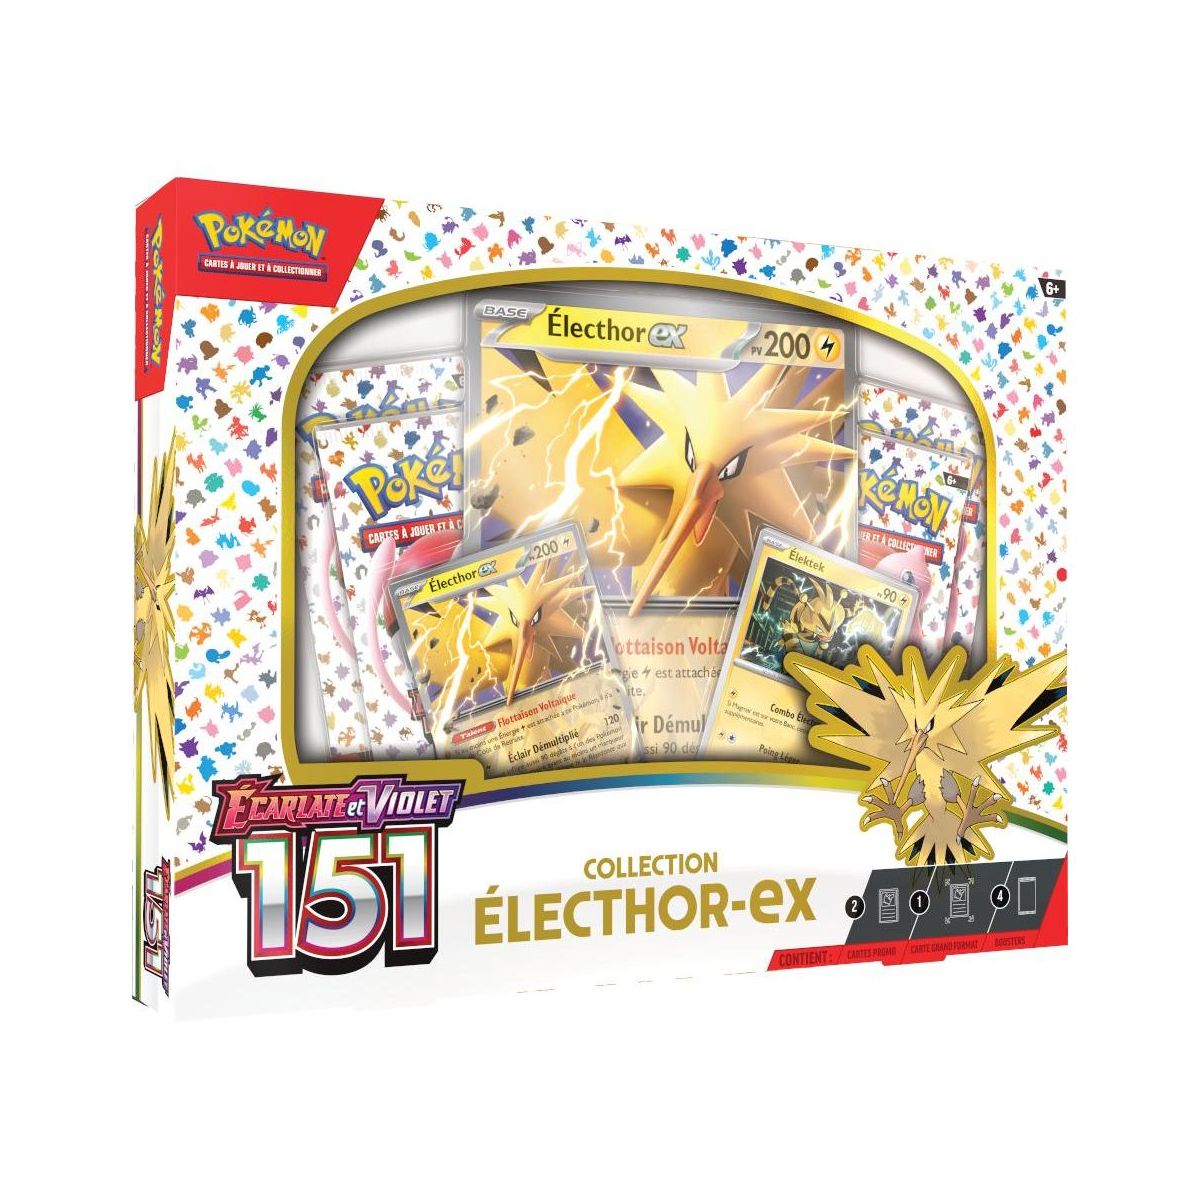 Pokémon - Zapdos EX Collection Box - Scarlet and Purple - 151 -[SV03.5 - EV03.5] - FR